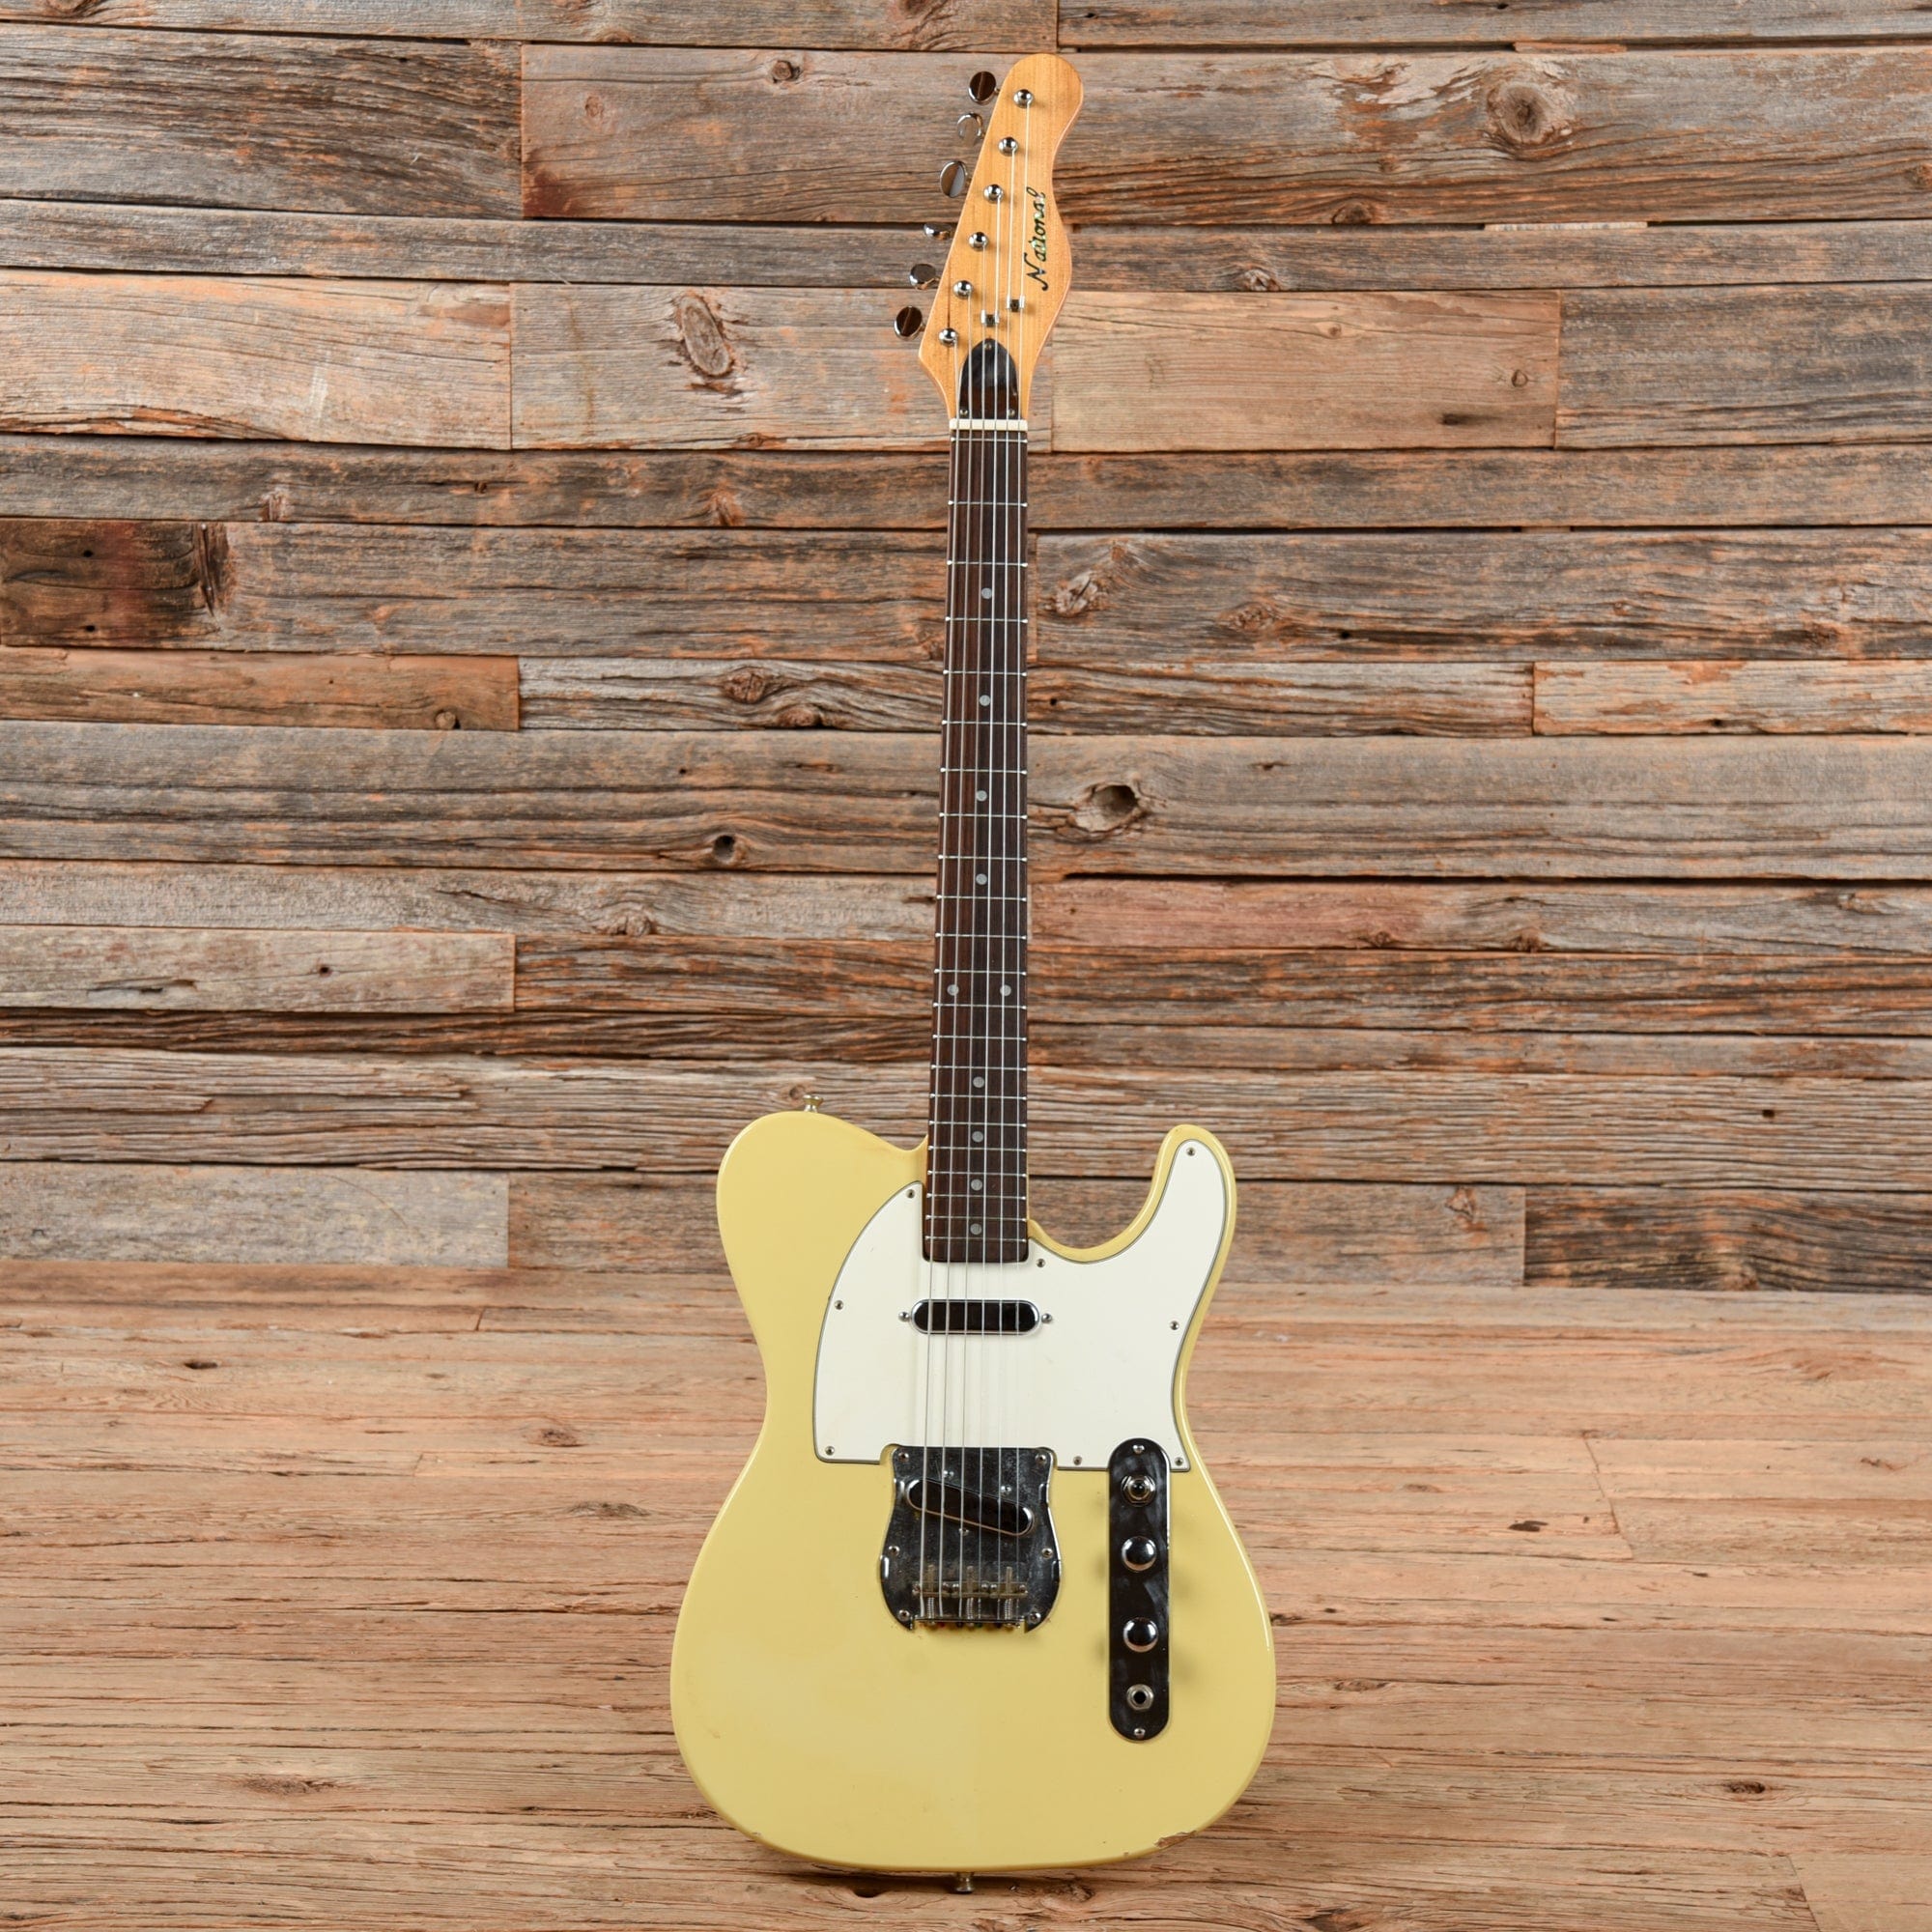 National FT-440 Finger Talker Blonde 1970s Electric Guitars / Solid Body